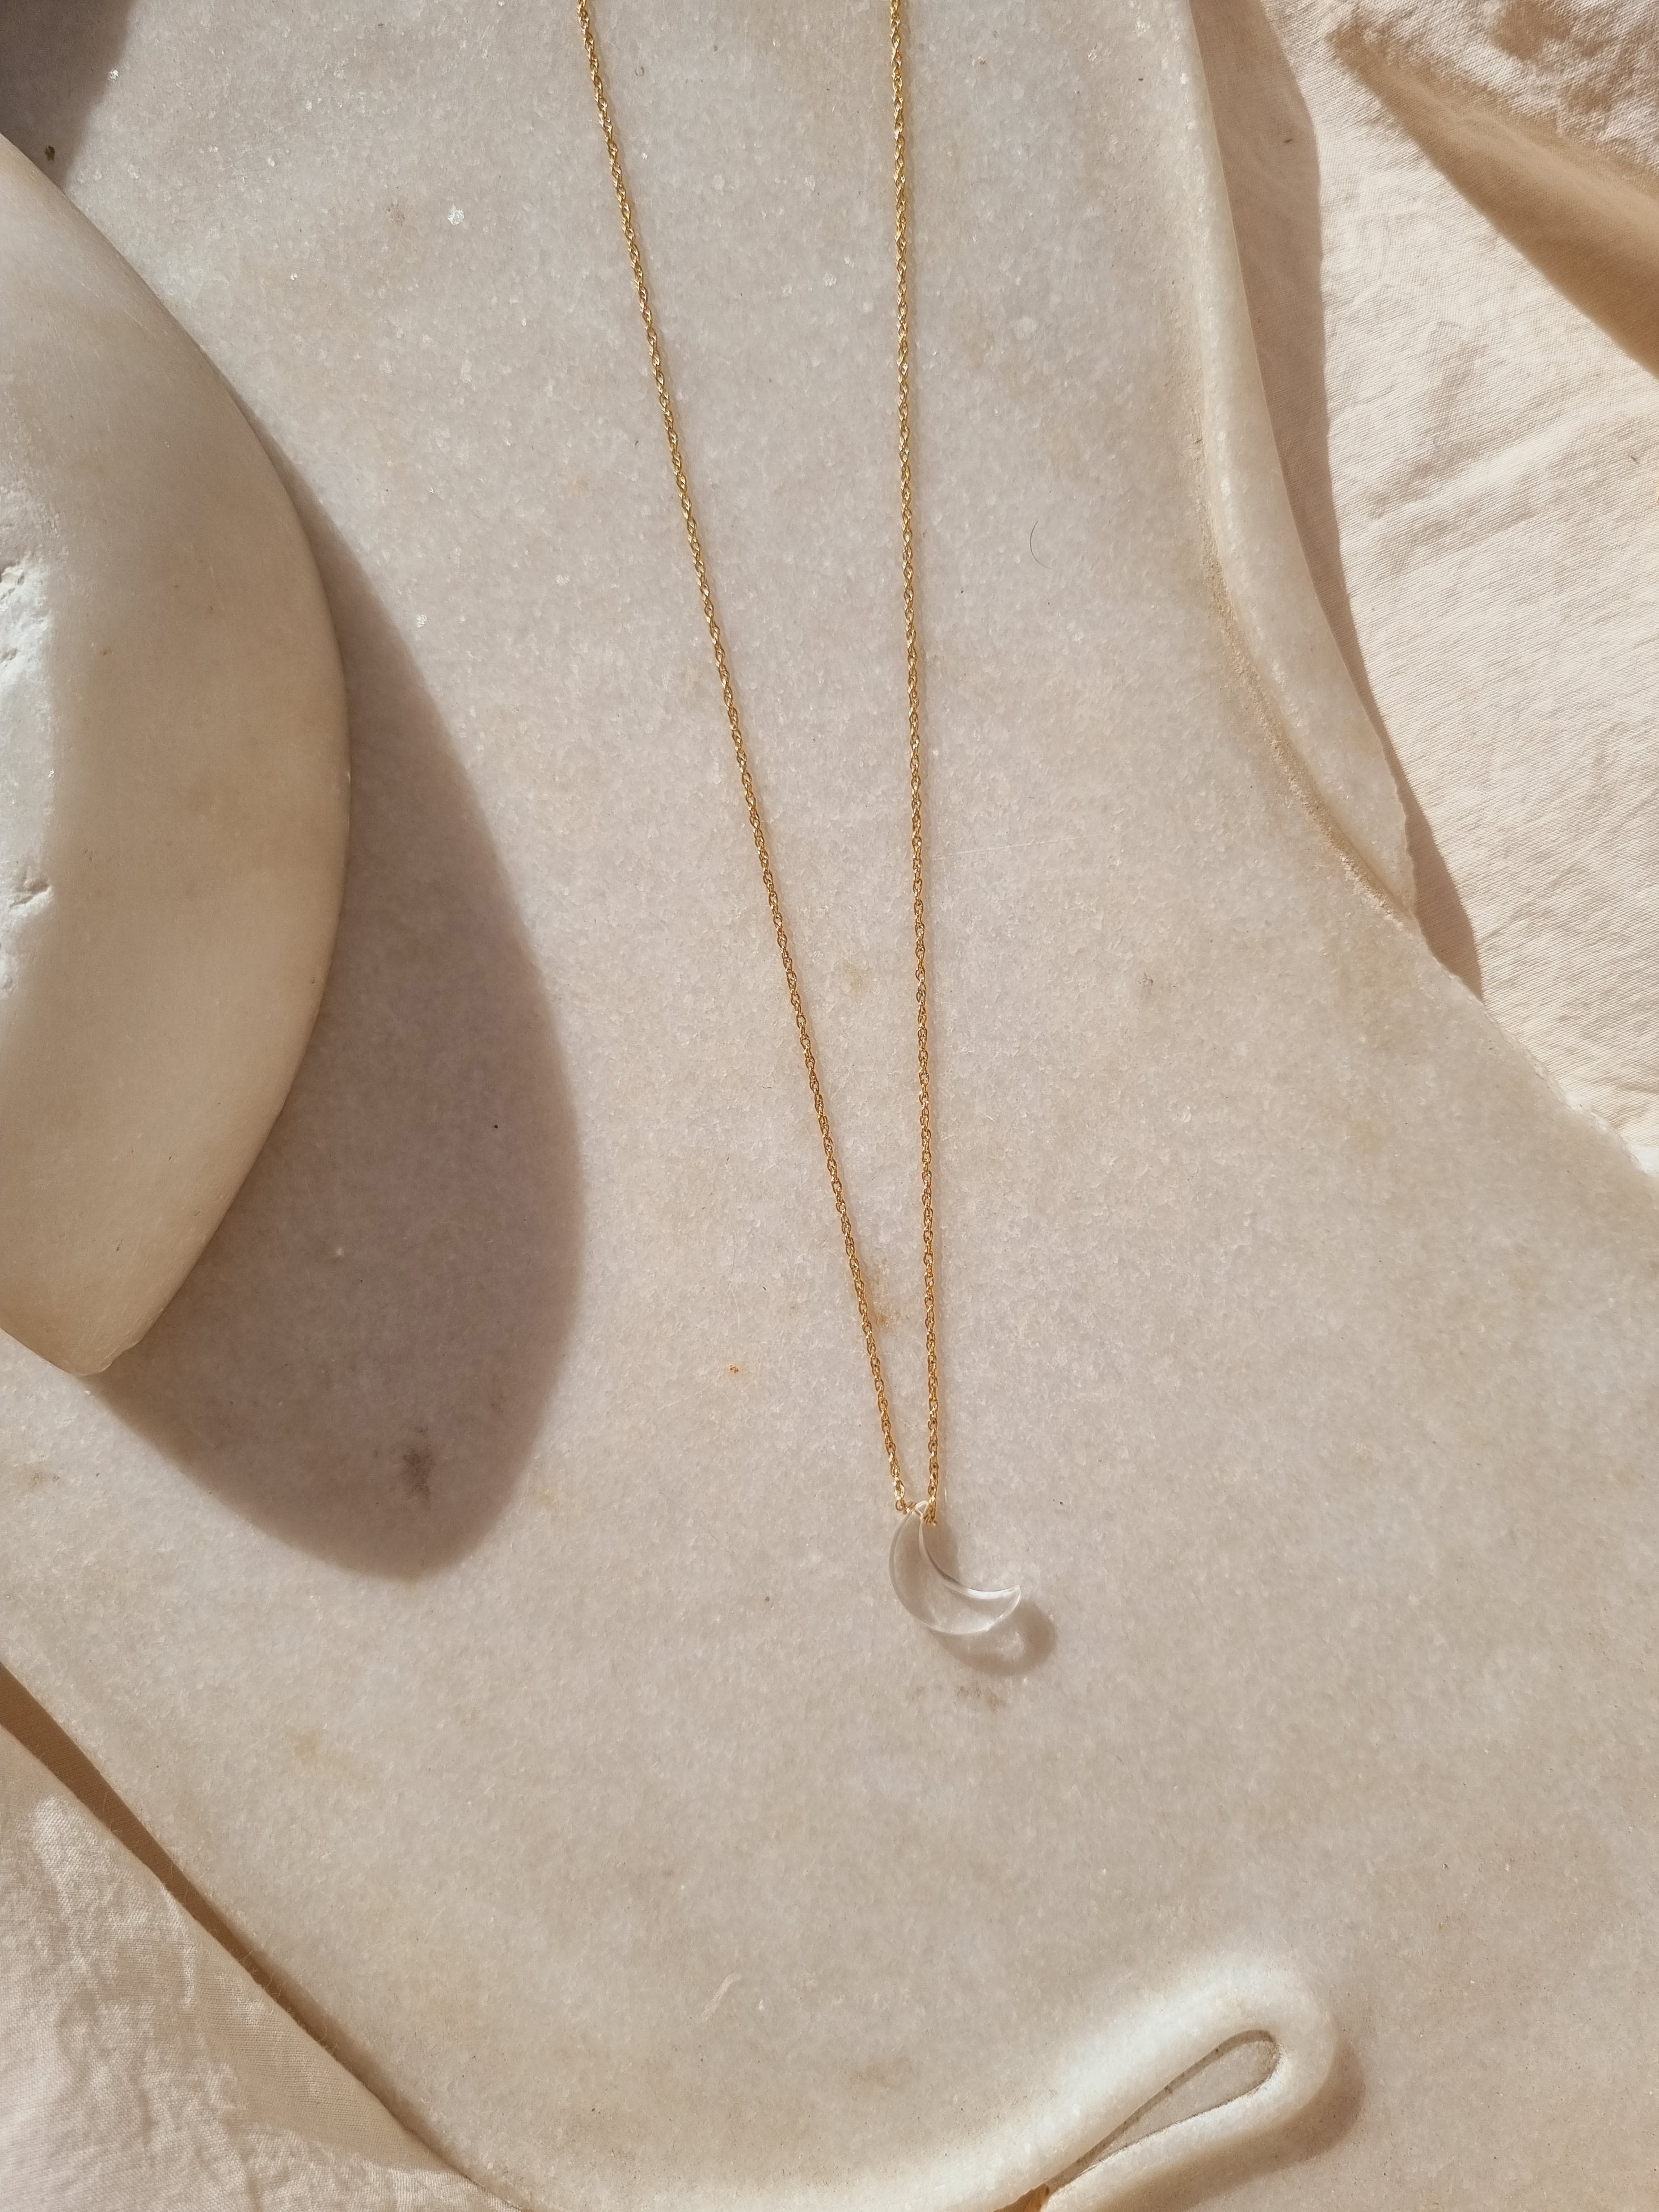 vidhyat - Clear quartz Luna Pendant